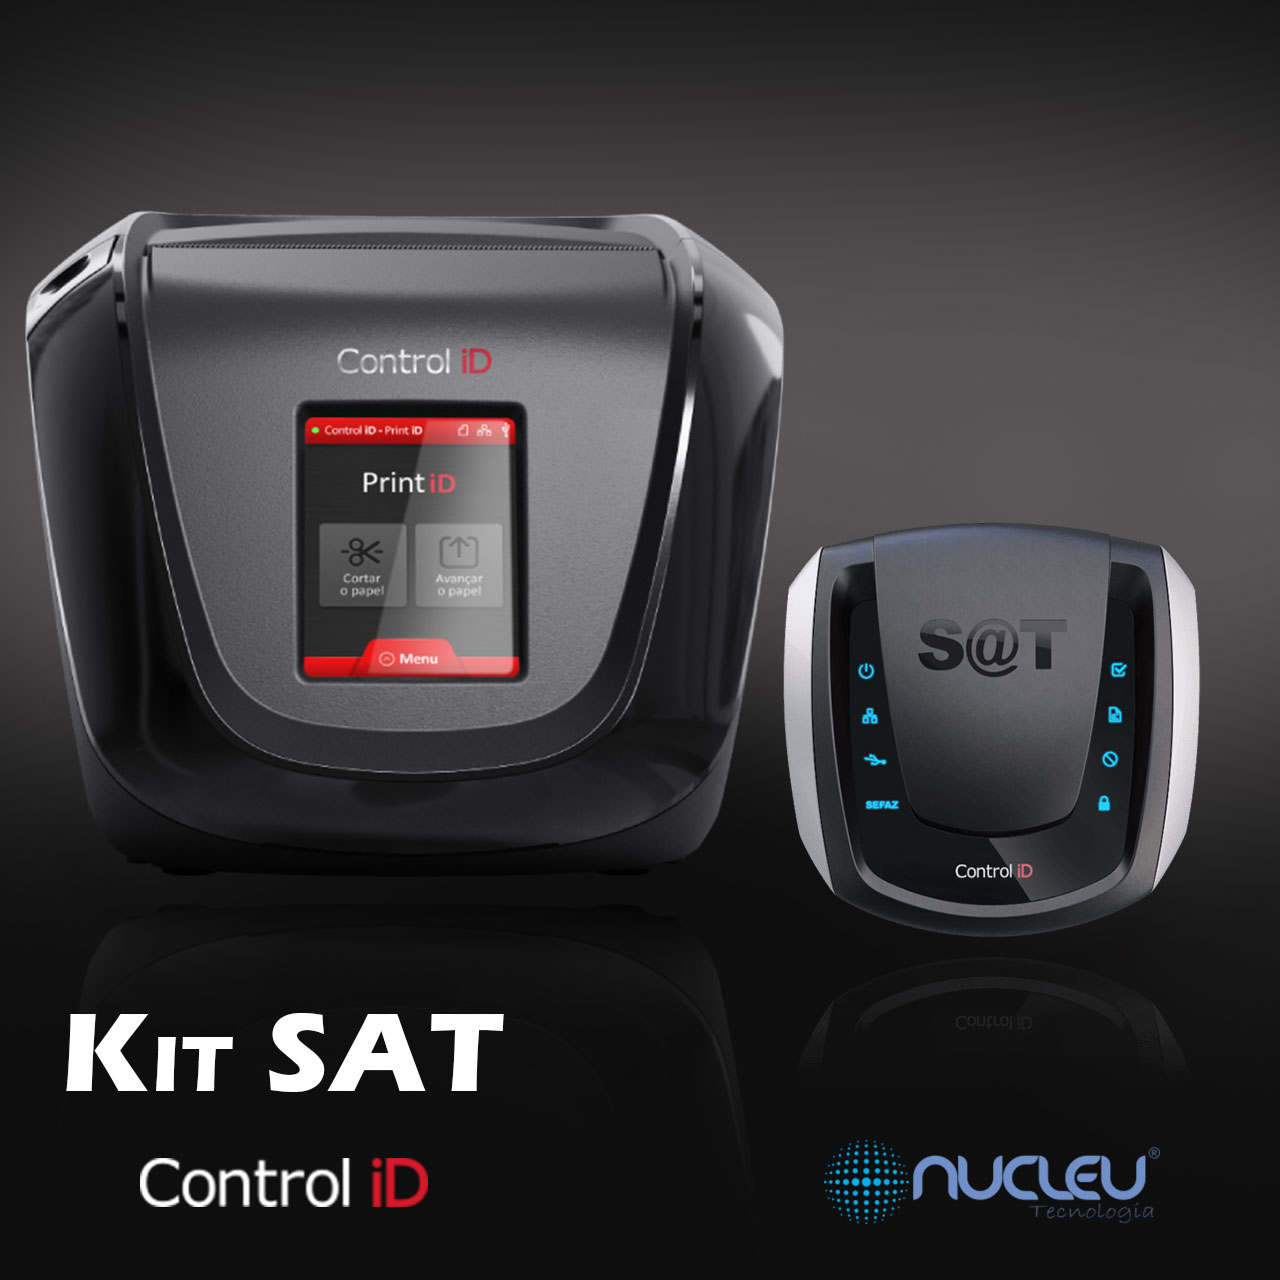 Kit SAT - Control iD